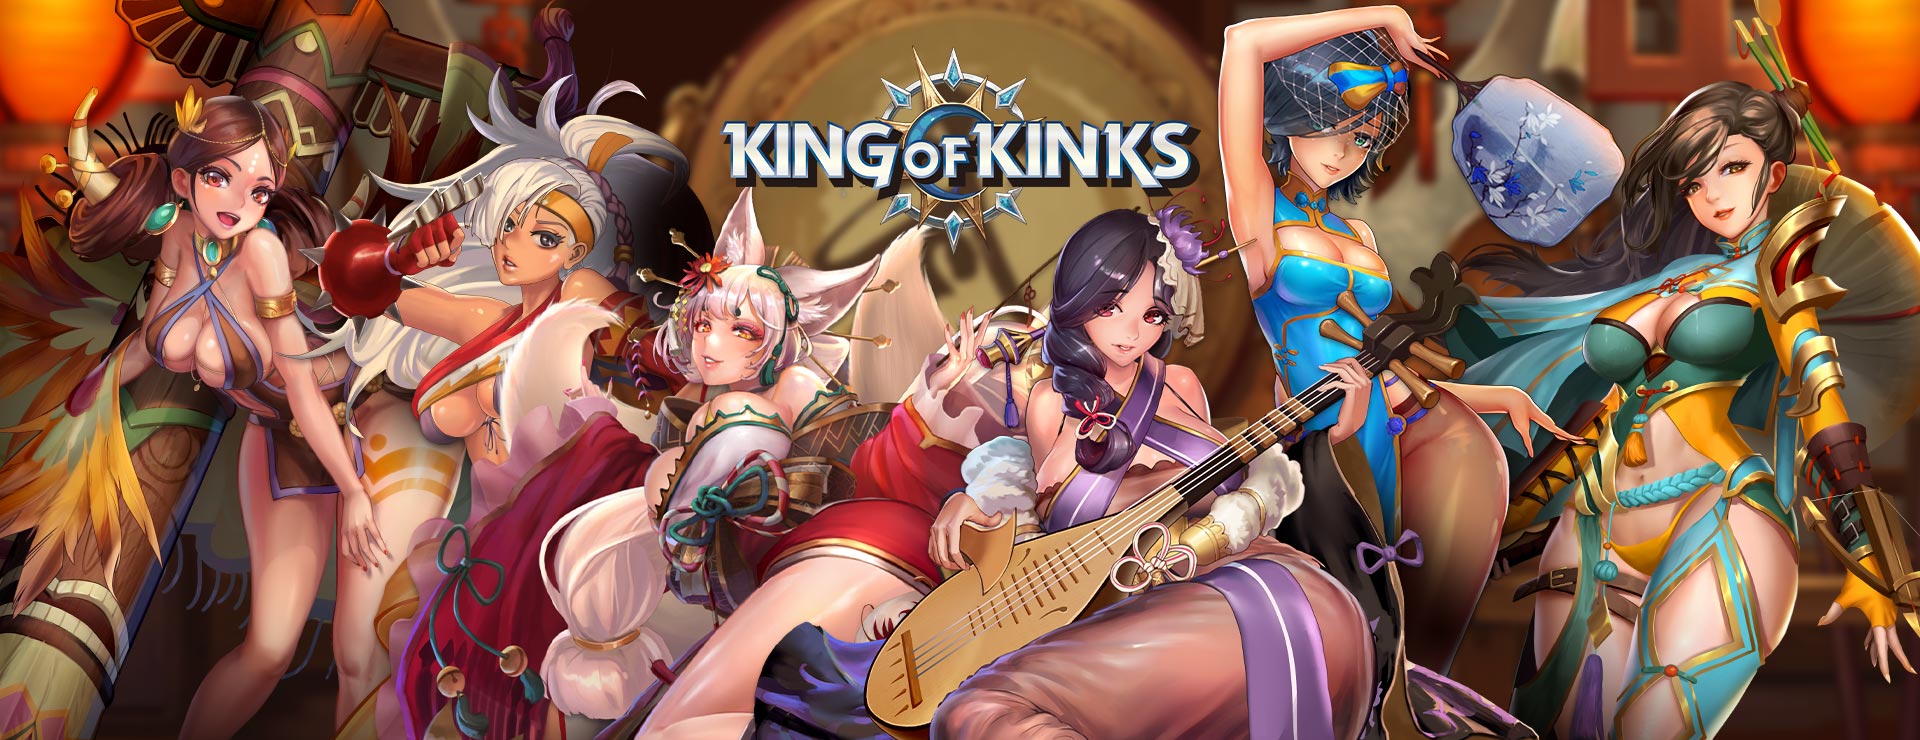 King of Kinks Game - アクションアドベンチャー ゲーム